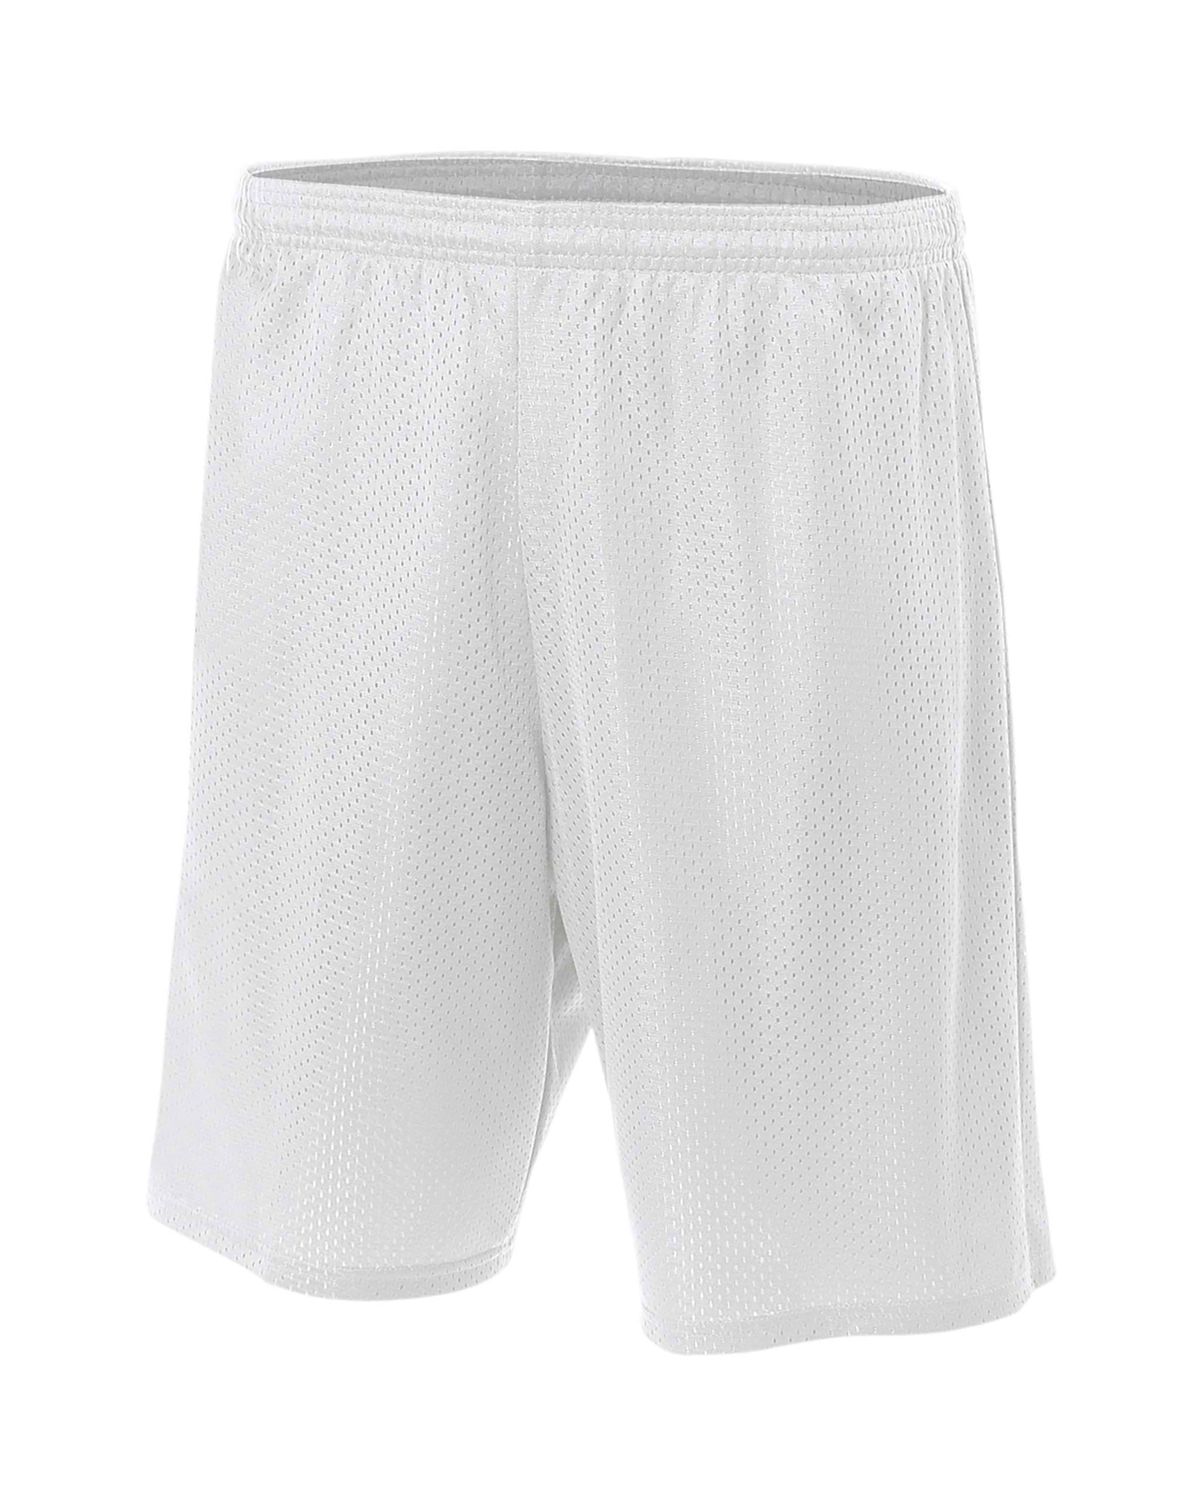 mesh shorts blank